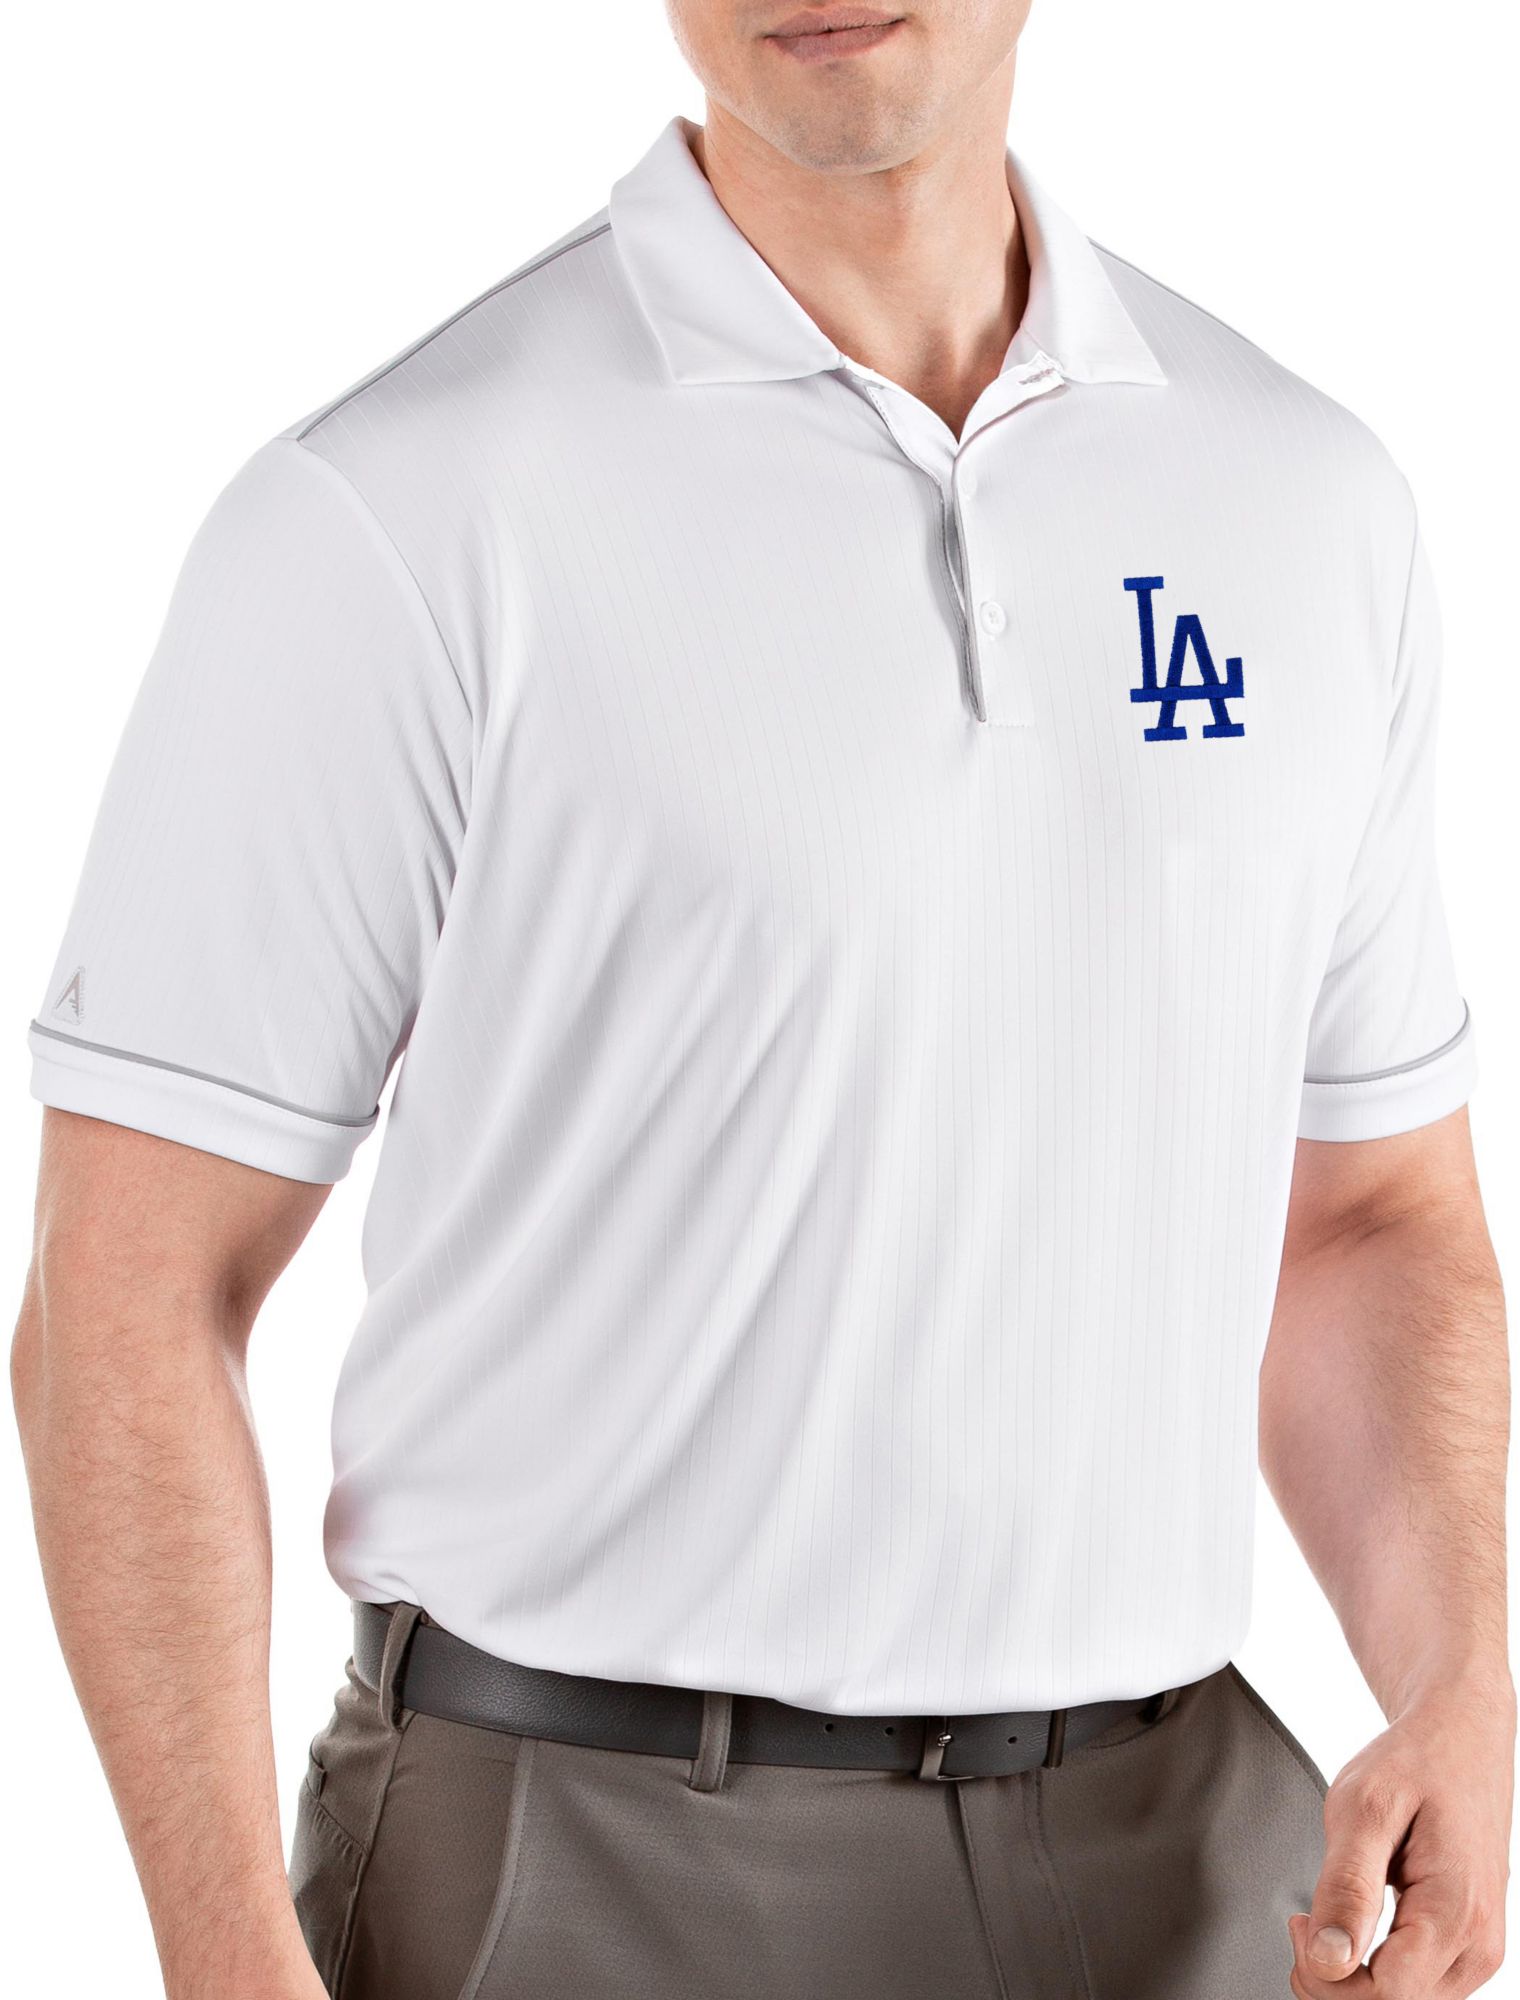 dodgers golf shirt